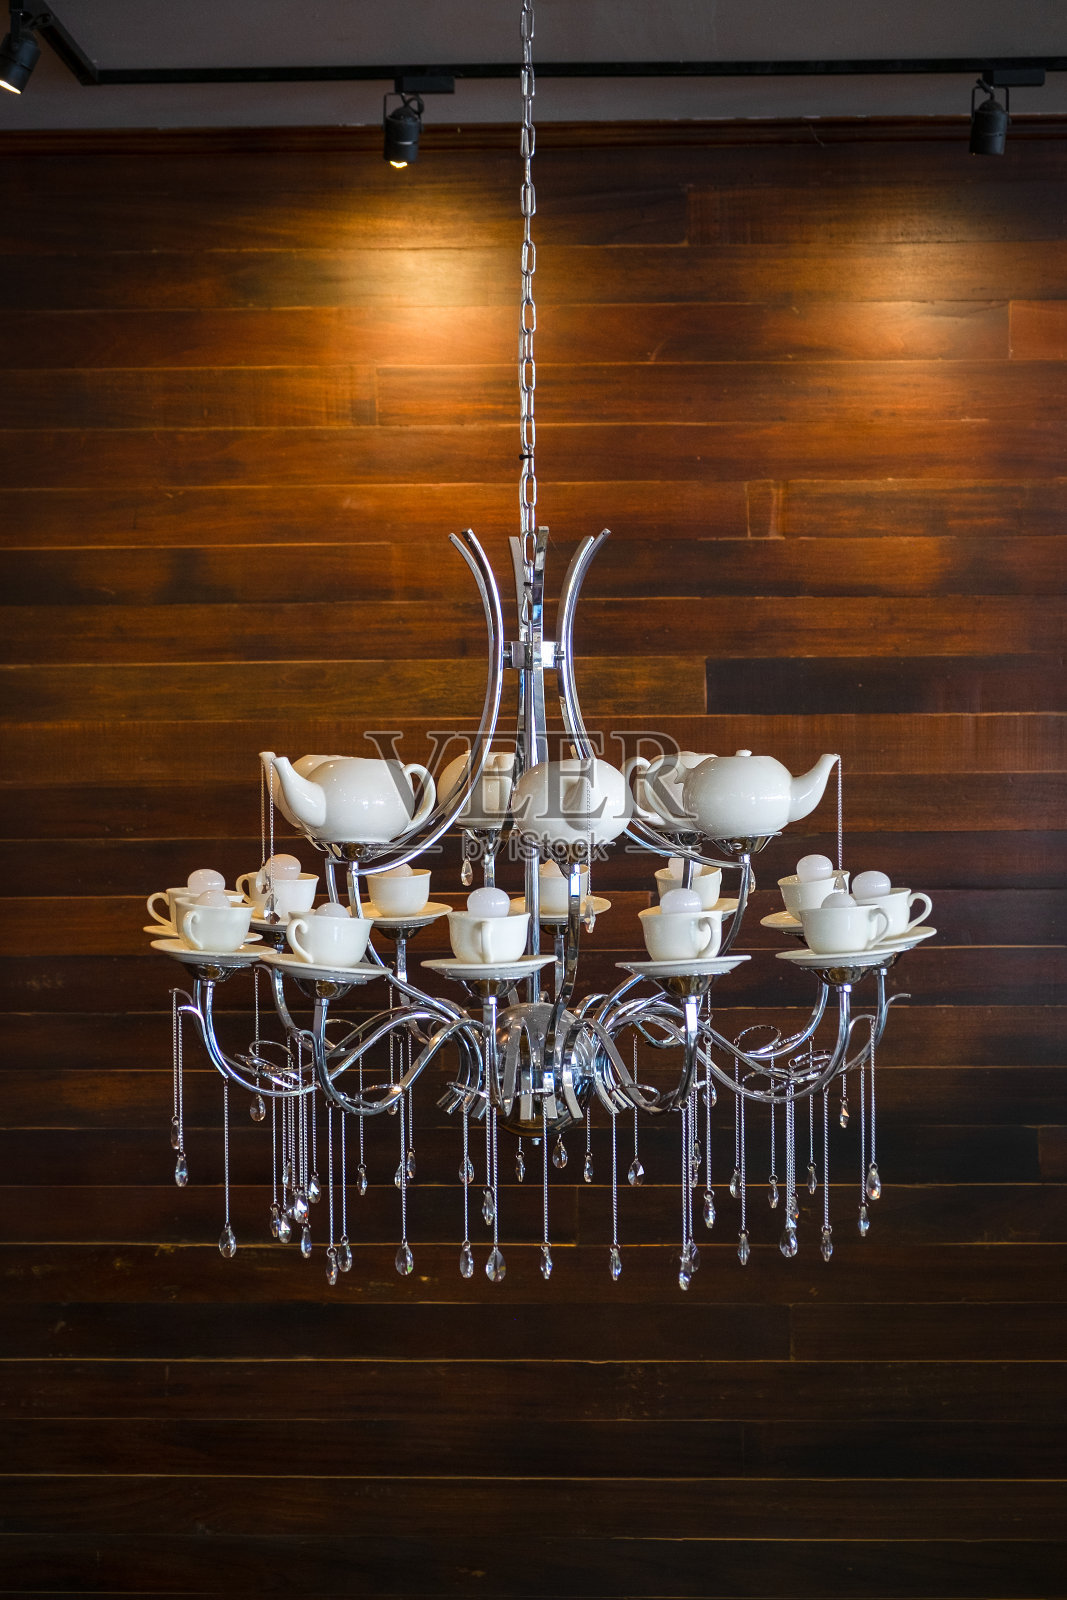 照明悬挂现代白色造型的壶杯灯当代为室内装饰豪华吊灯风格。照片摄影图片